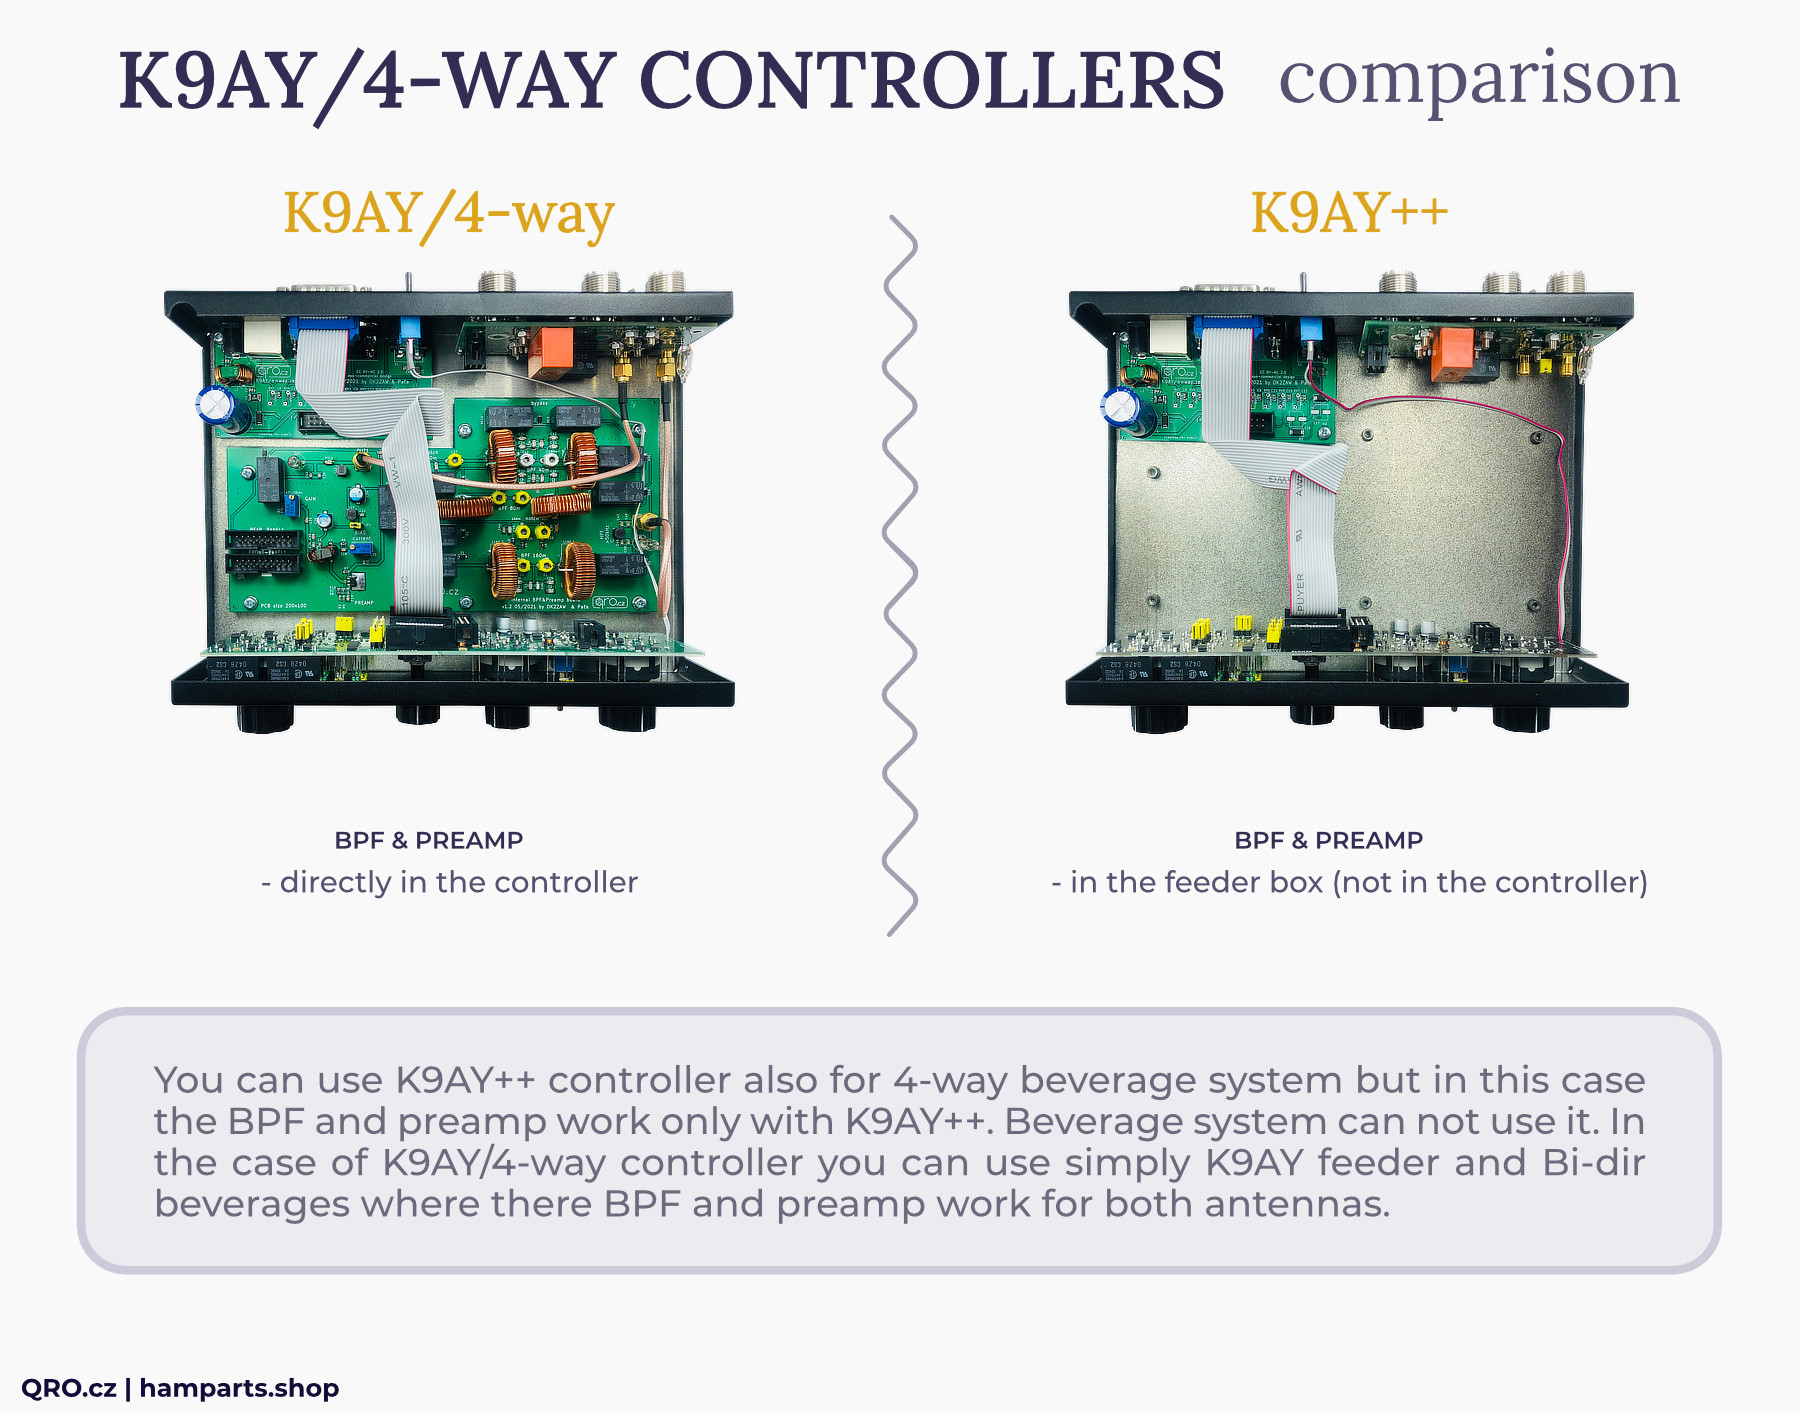 k9ay/4-way and k9ay++ controller comparison qro.cz hamparts.shop